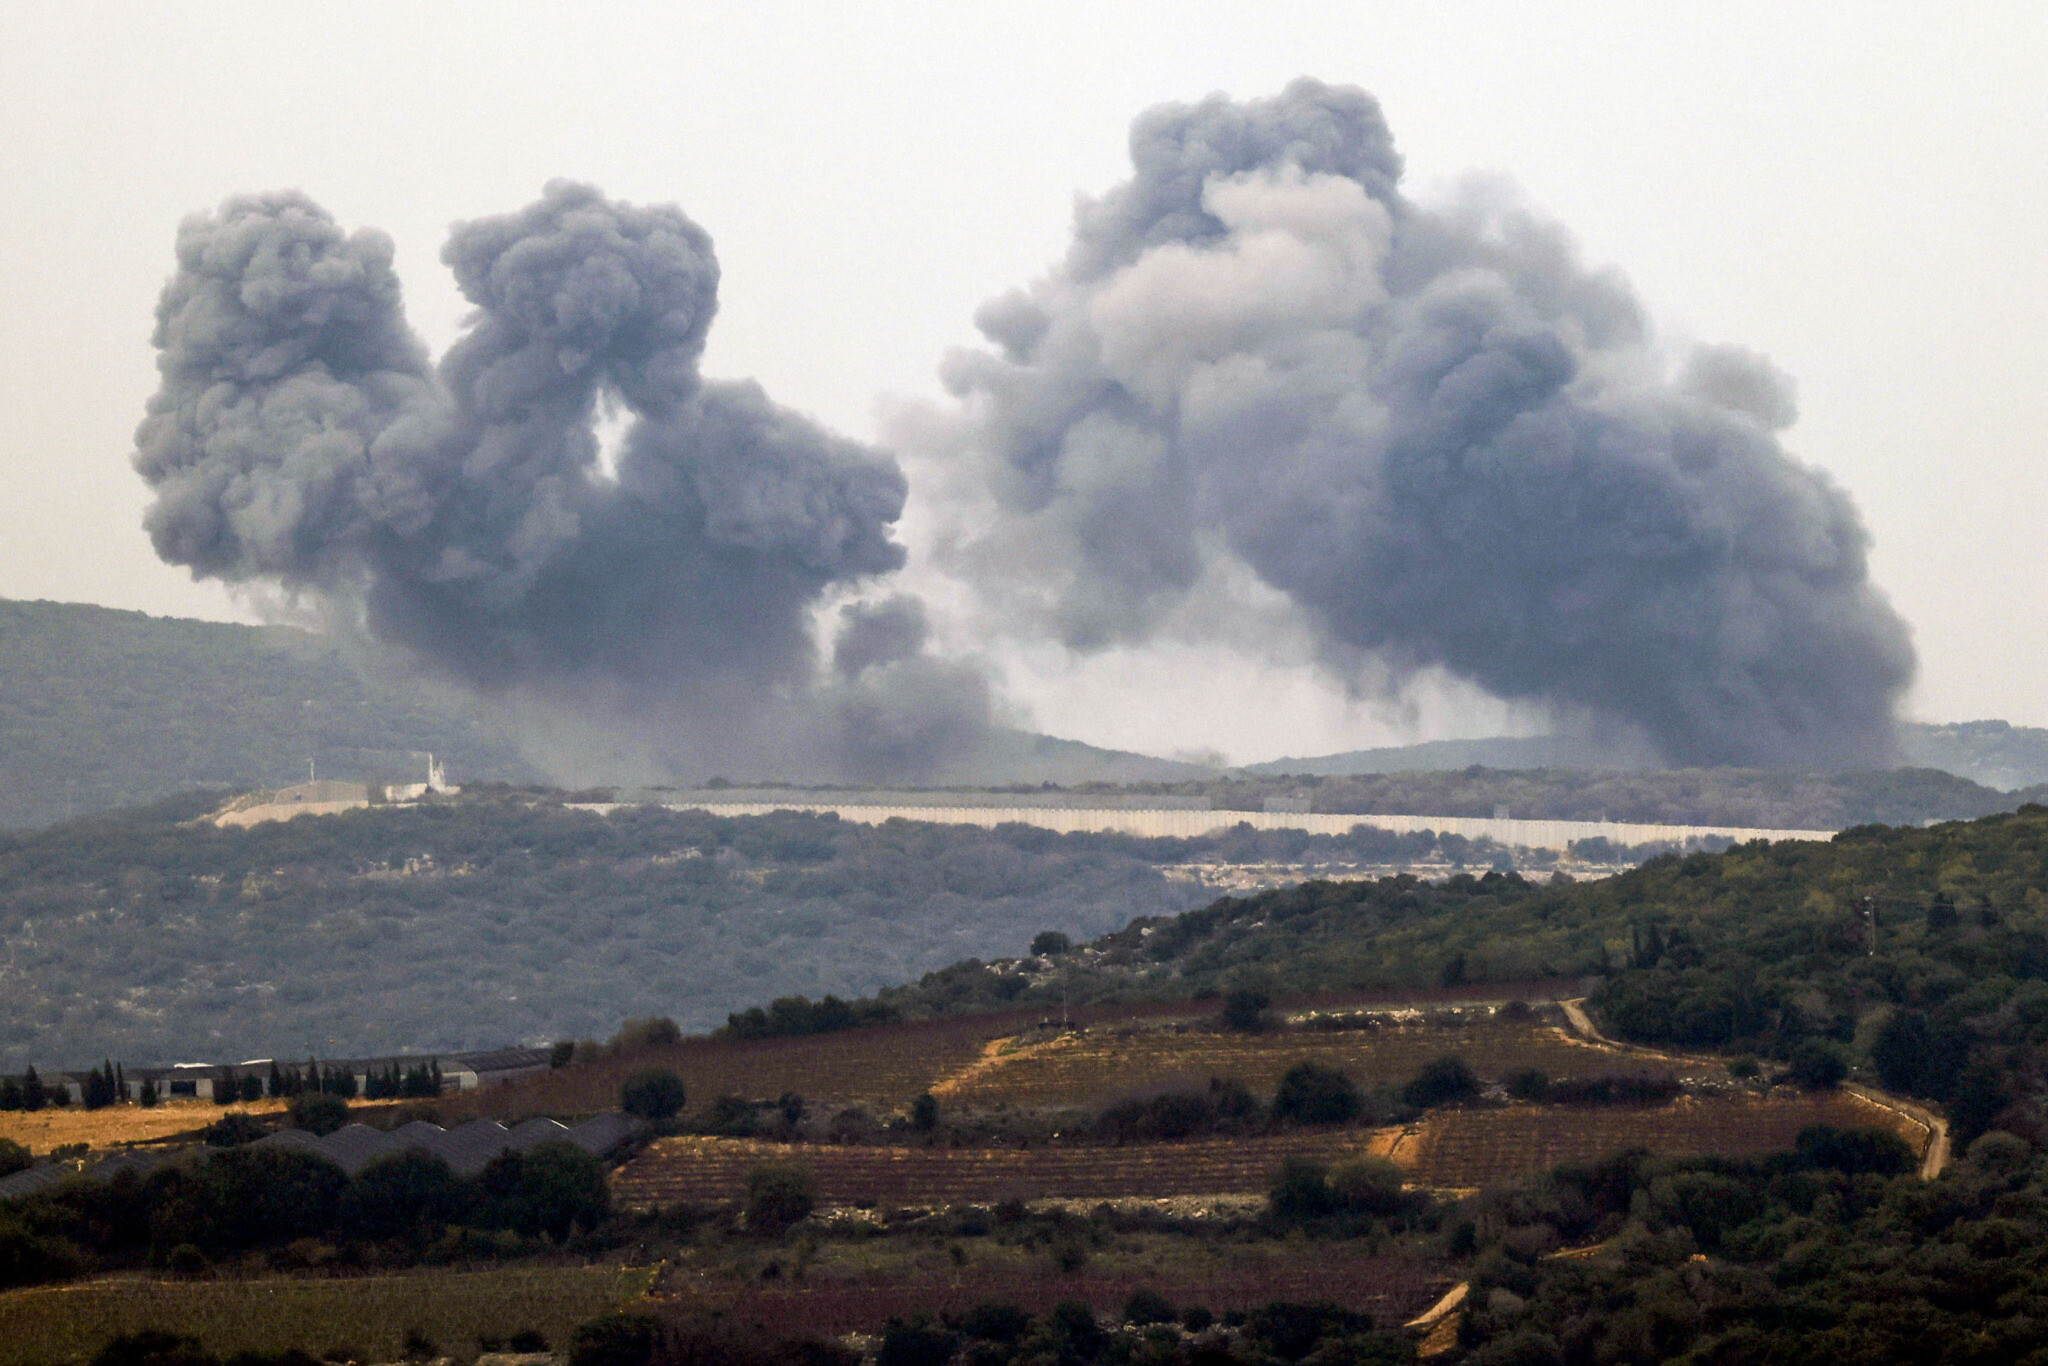 2 te vrare 3 te plagosur ne sulmet ajrore izraelite ne jug te libanit